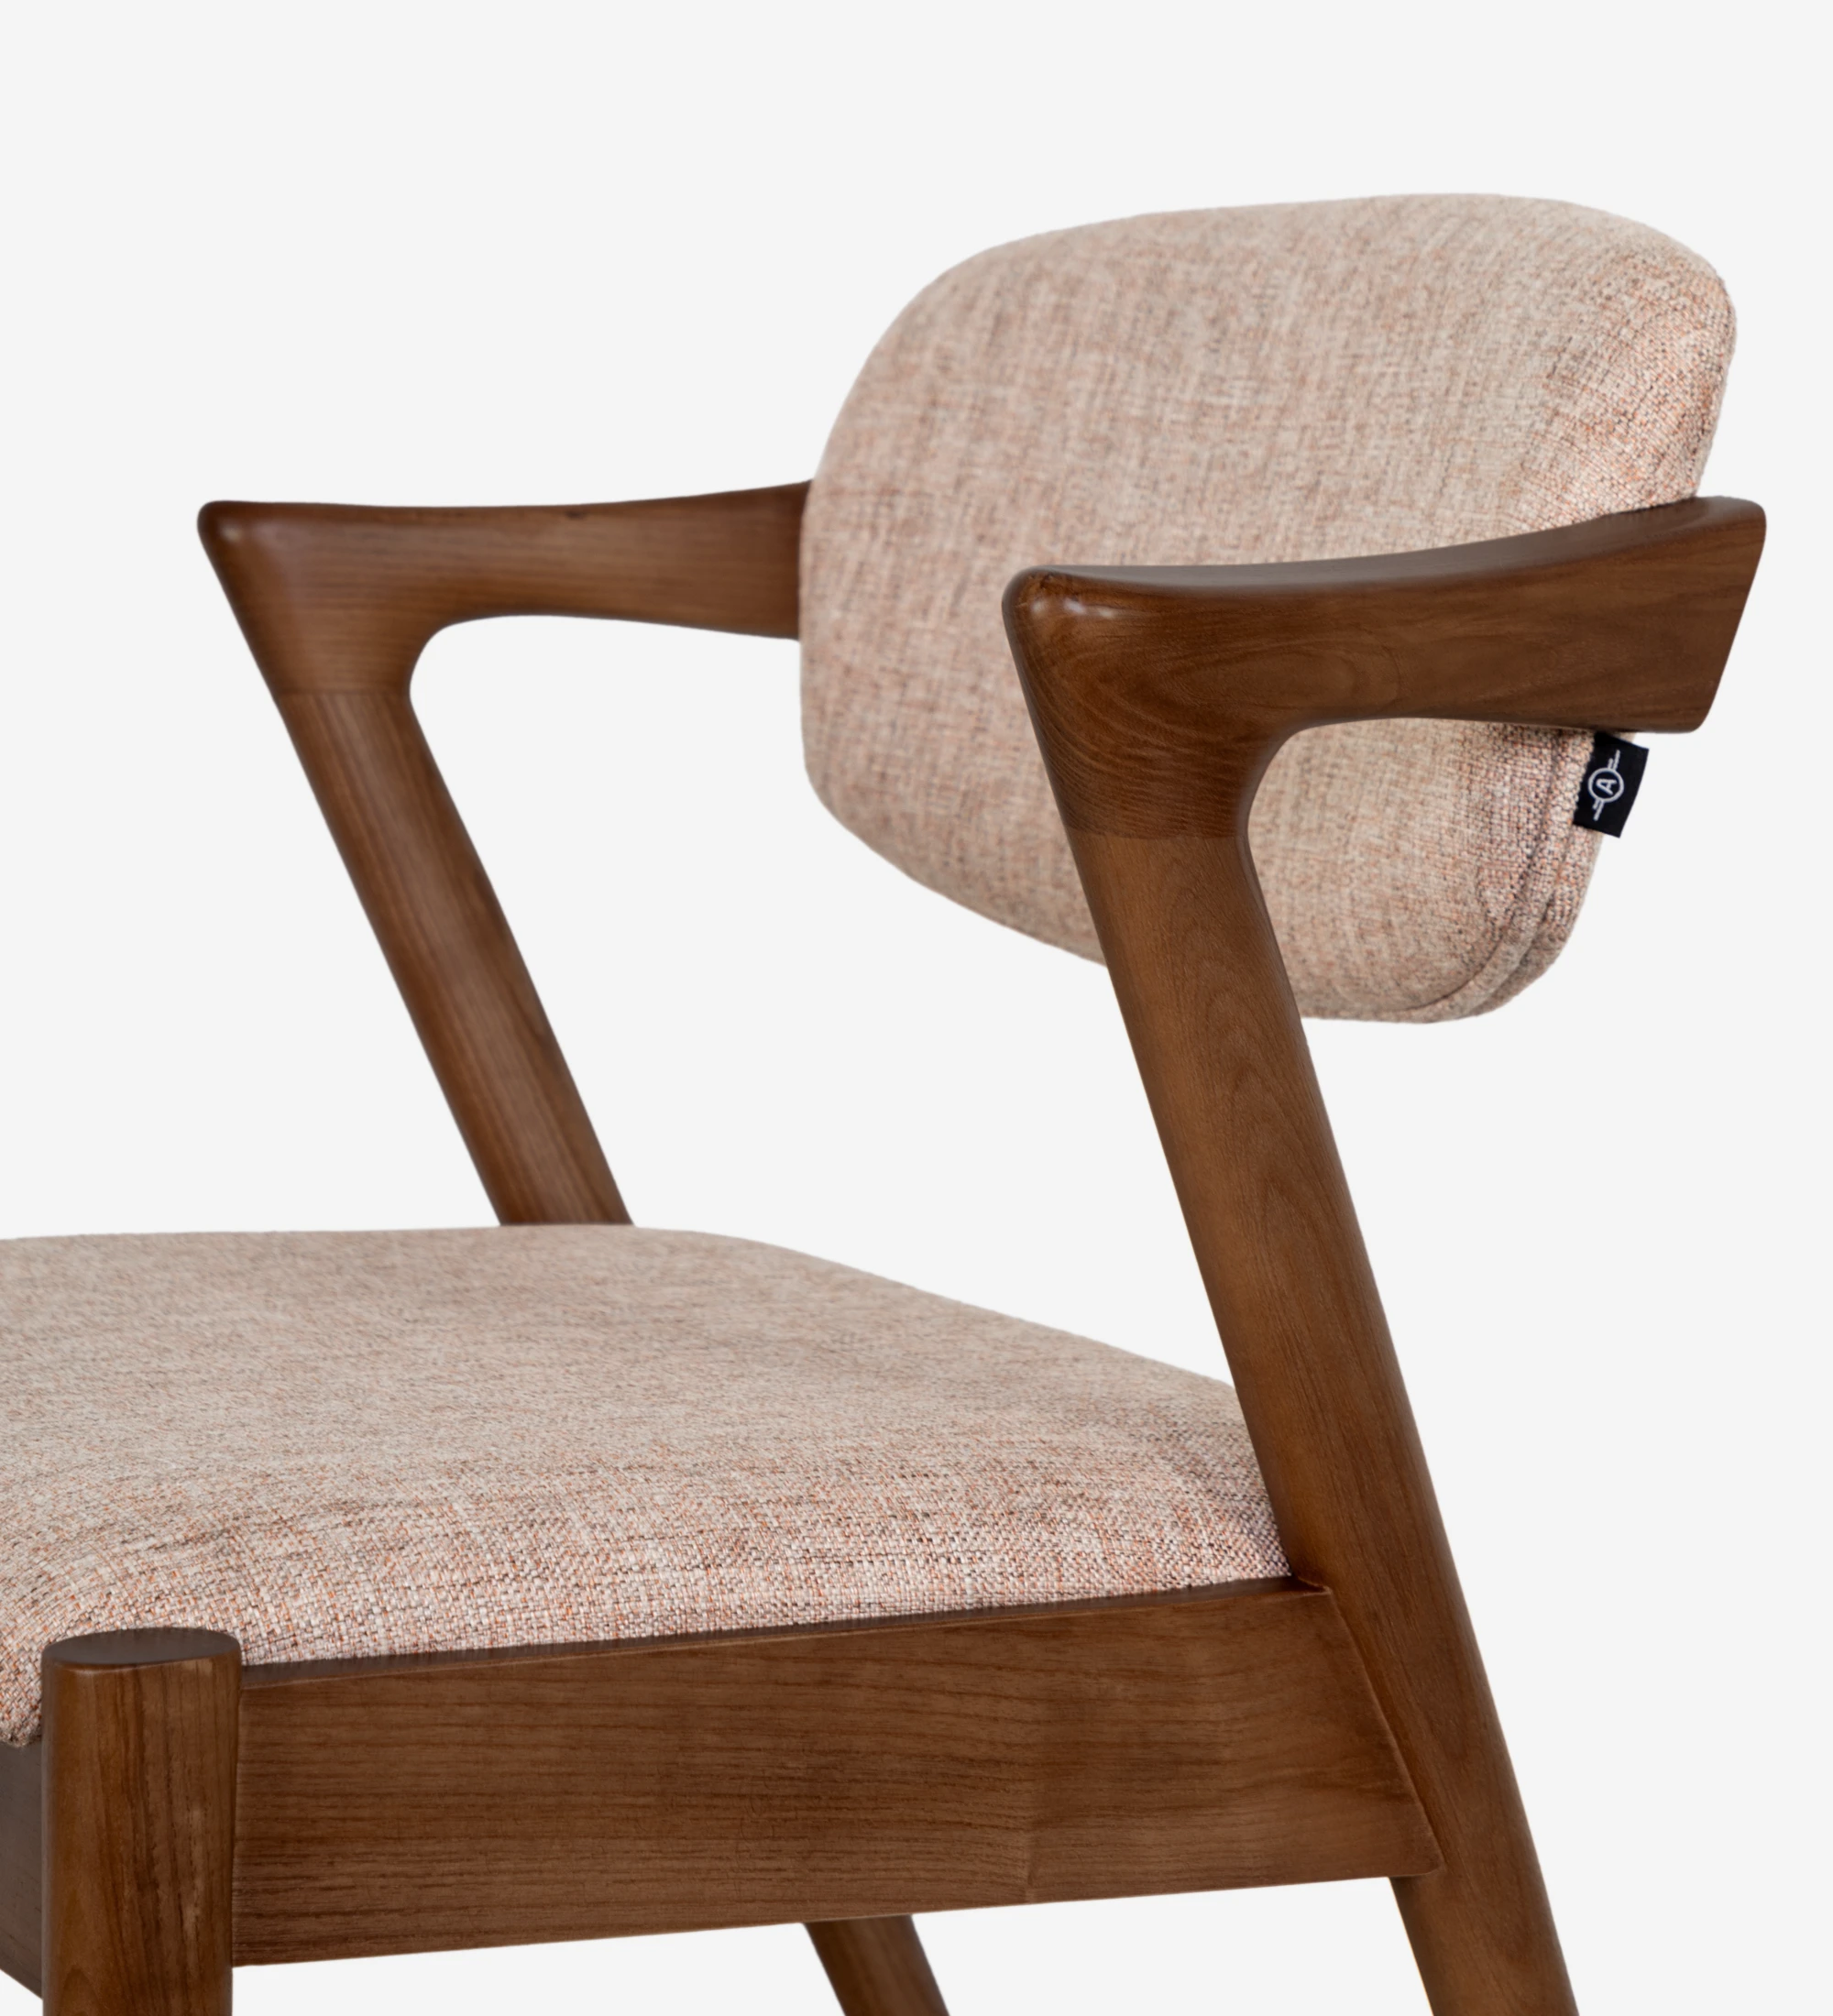 Silla en madera de fresno color nogal, con asiento y respaldo tapizado en tejido.